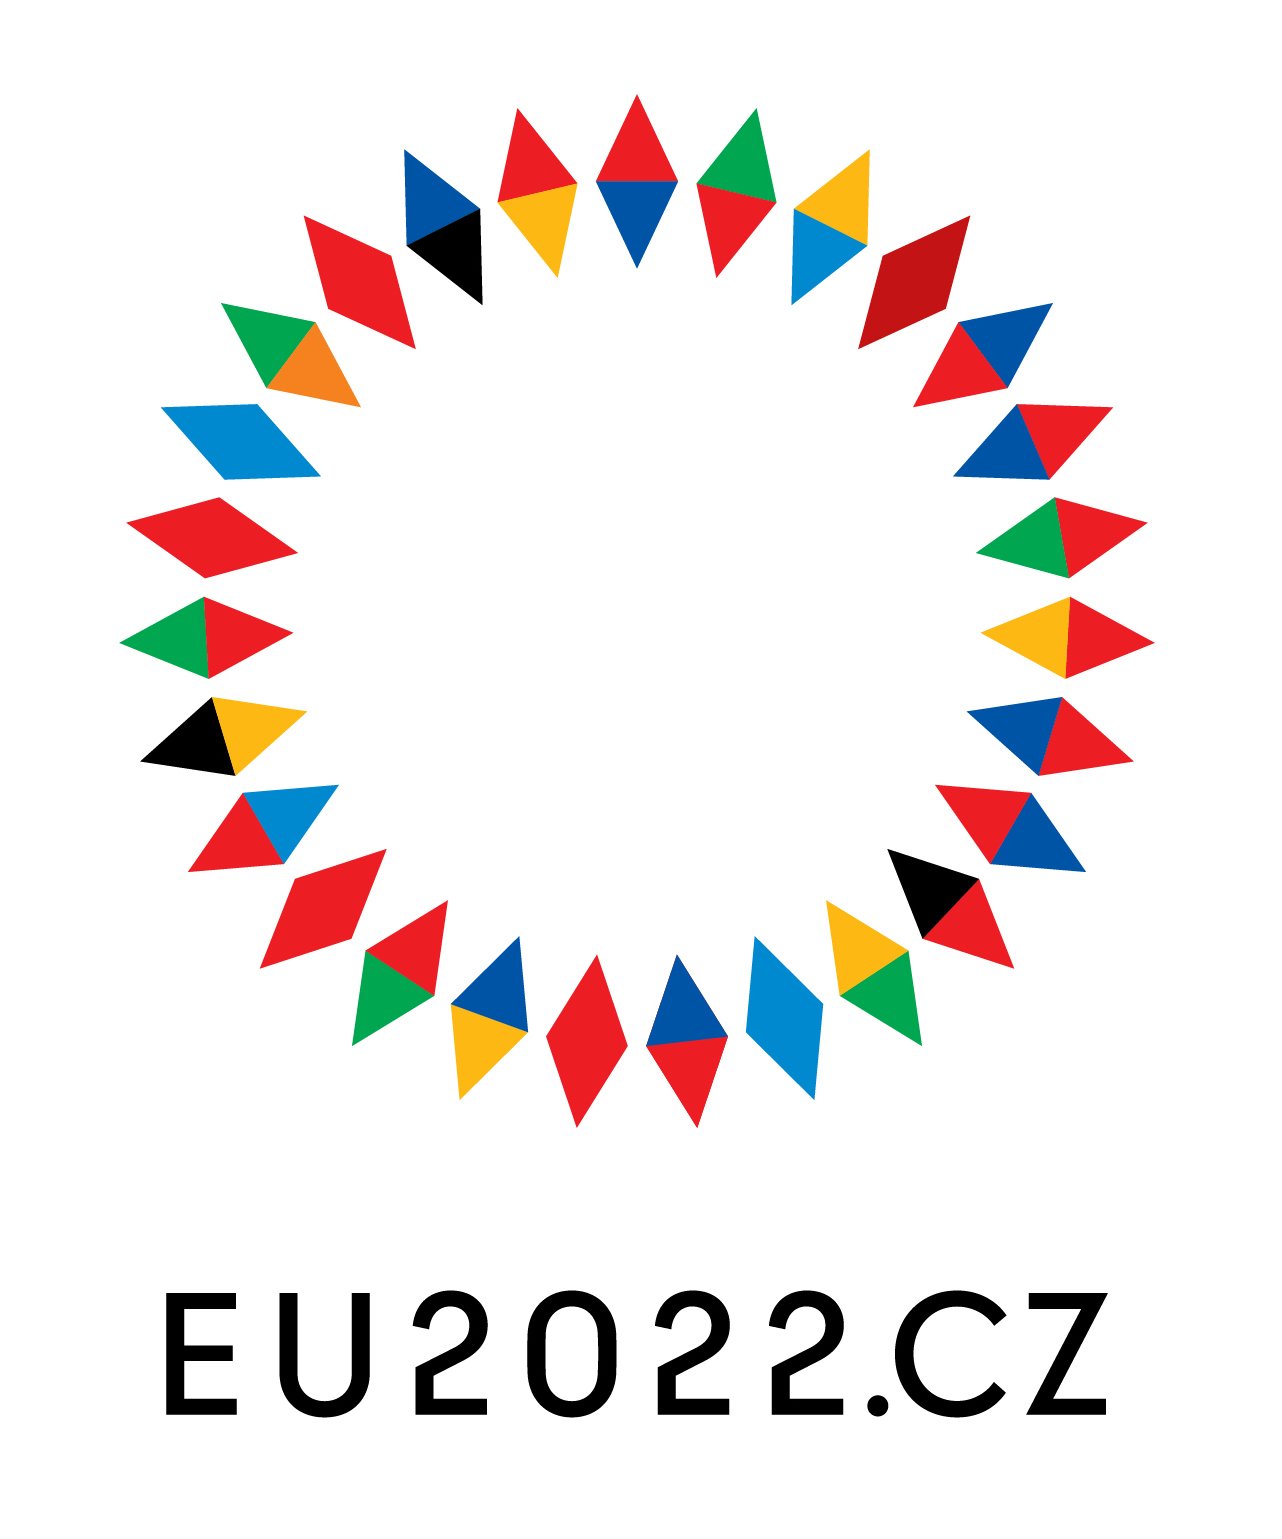 EU2022 CZ PRESIDENCY